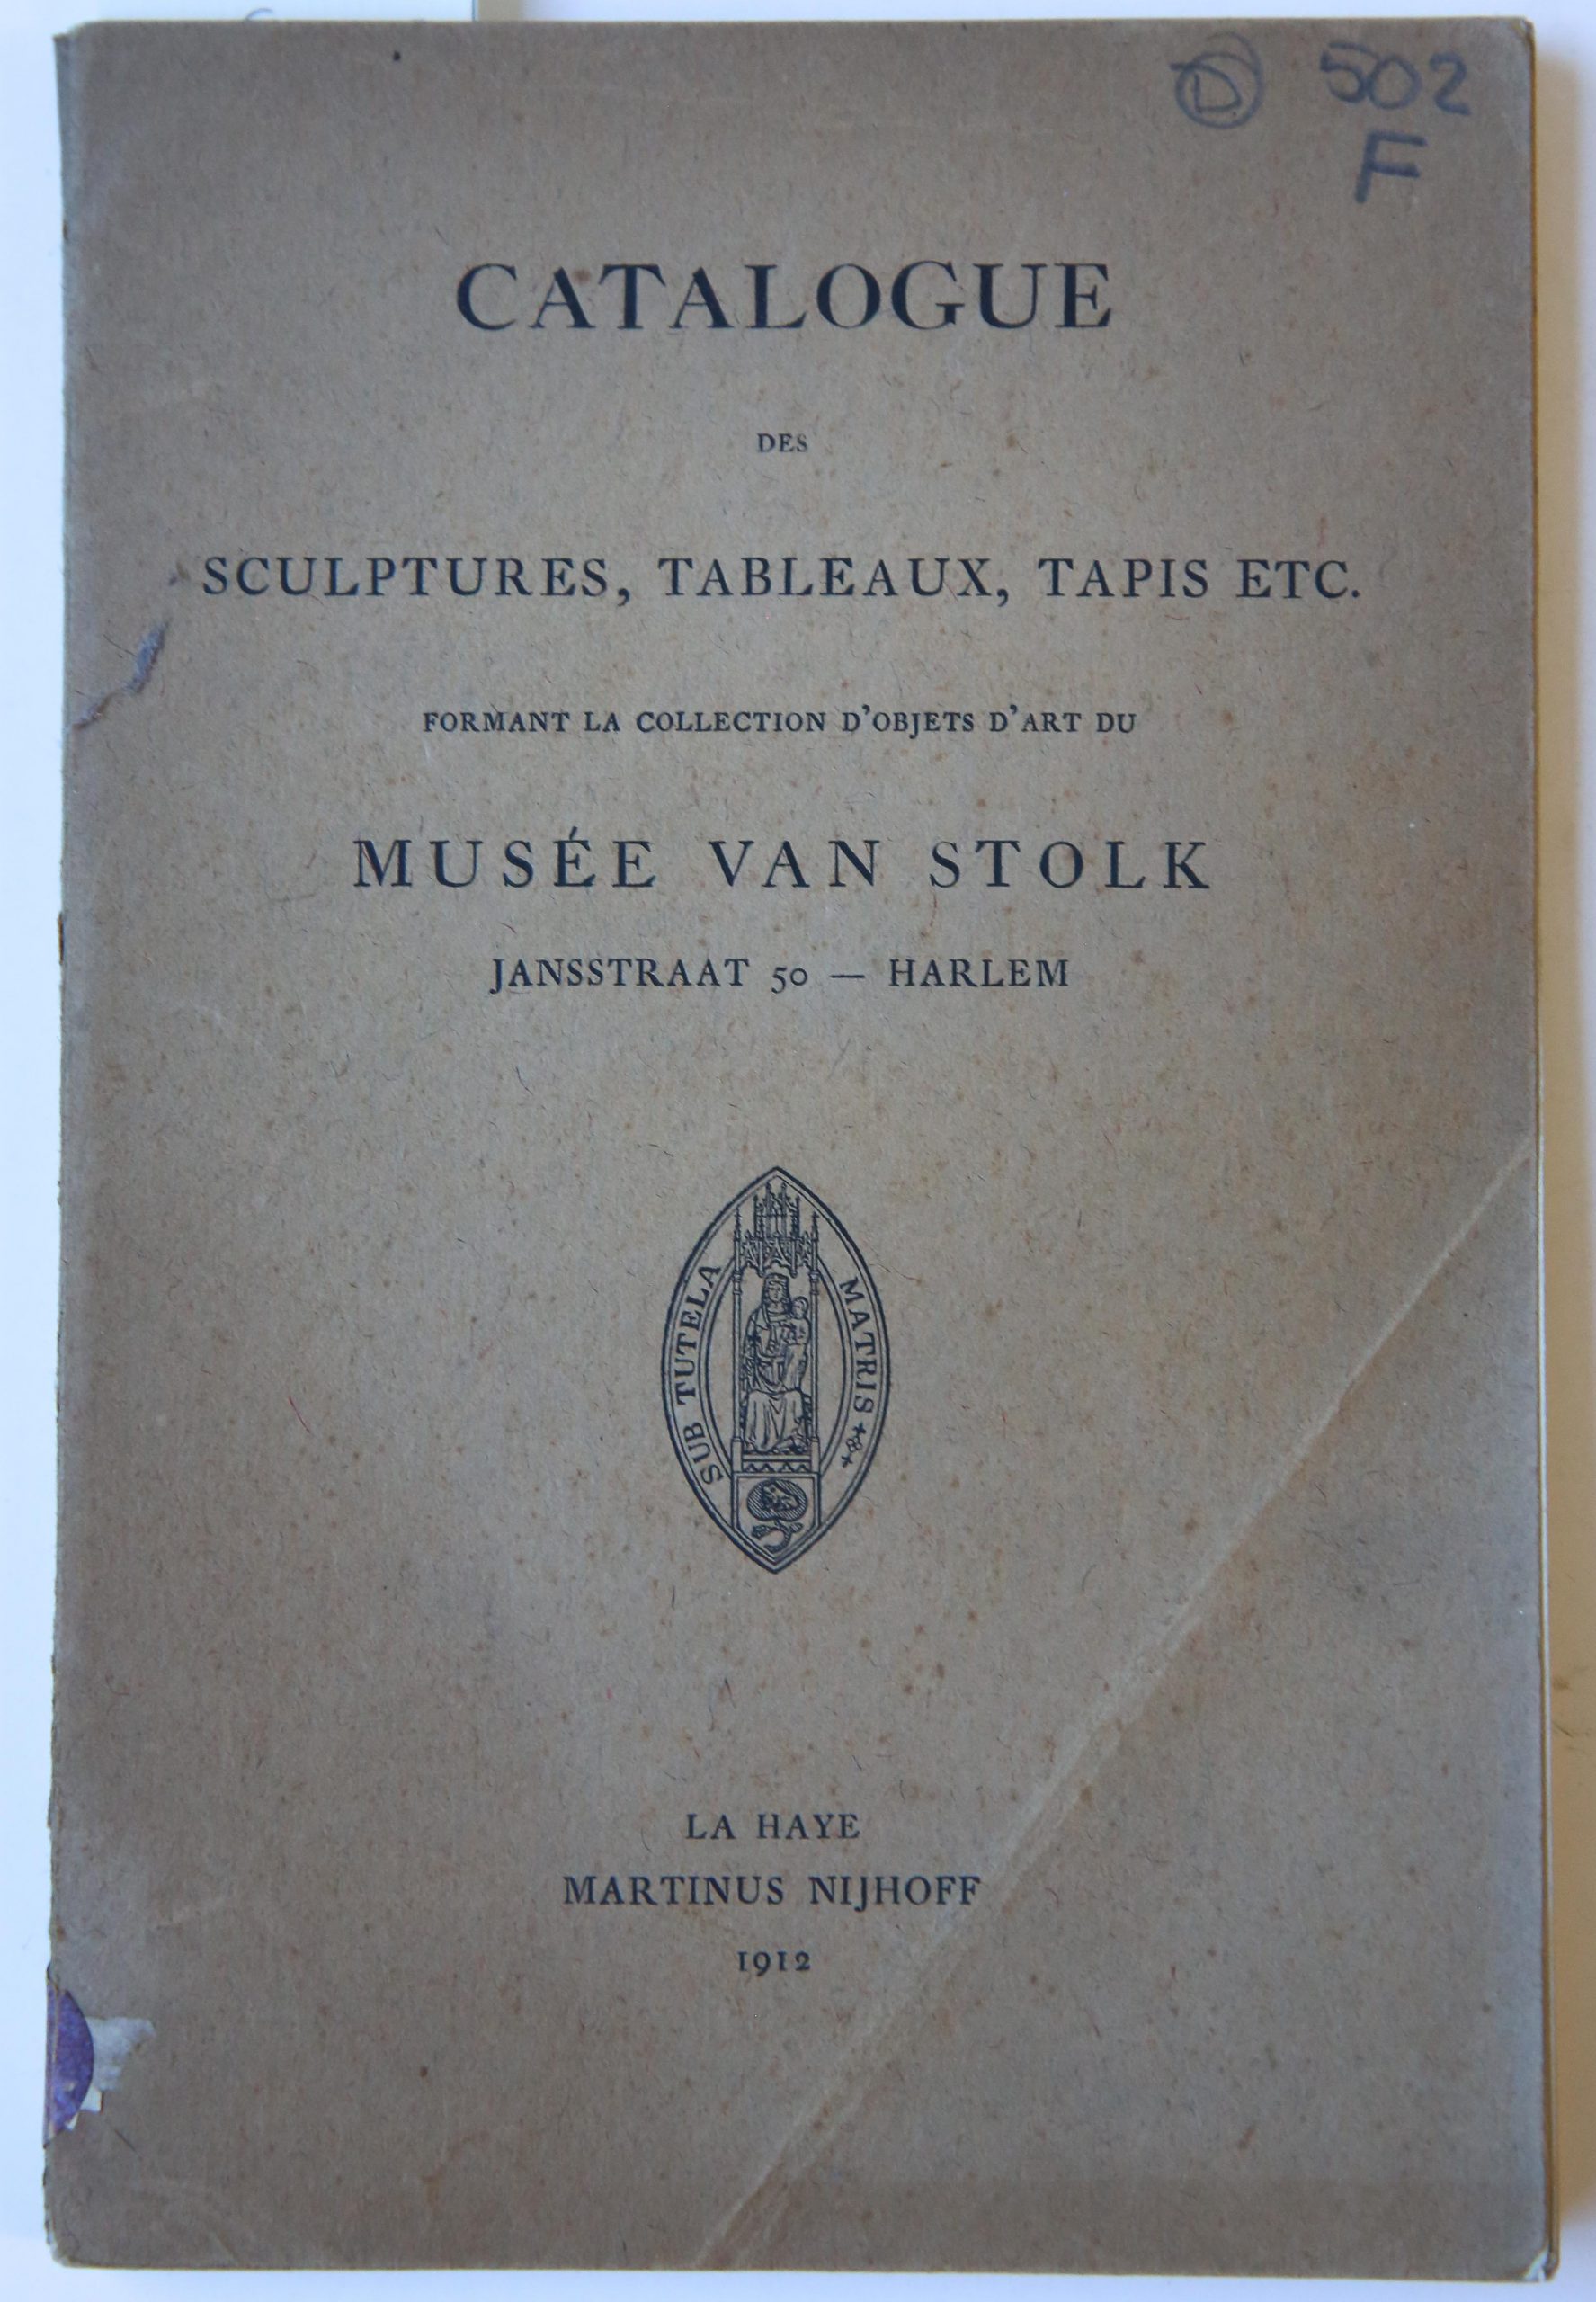 [Musee van Stolk] - Catalogue des sculptures, tableaux, tapis etc., formant la collection d'objects d'art du Musee van Stolk, La Haye : M. Nijhoff, 1912, 136 pp.